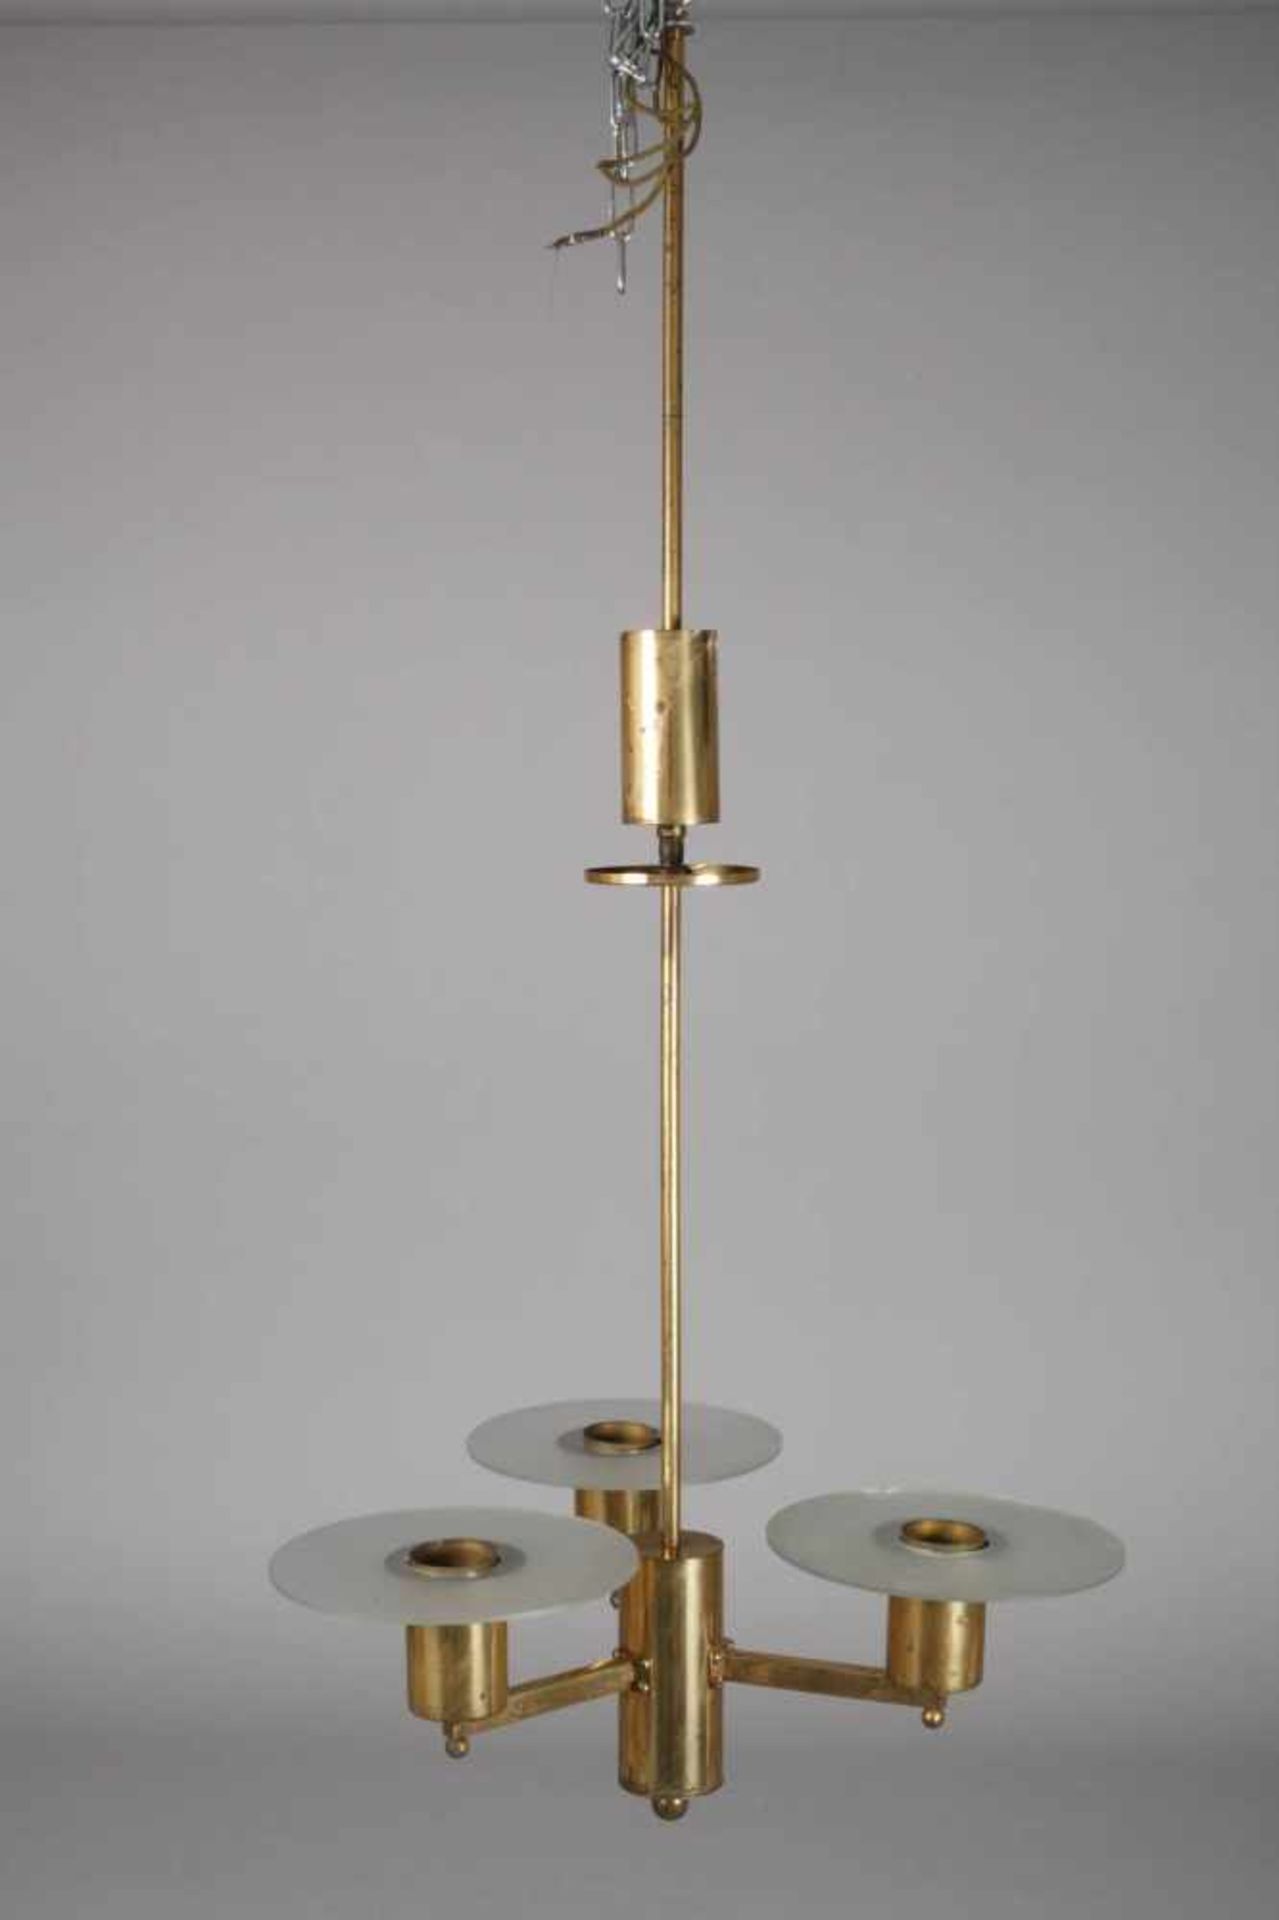 Deckenlampe Art découm 1930, vergoldetes Metallgestänge in schlichter, geometrischer Formsprache, - Bild 4 aus 4